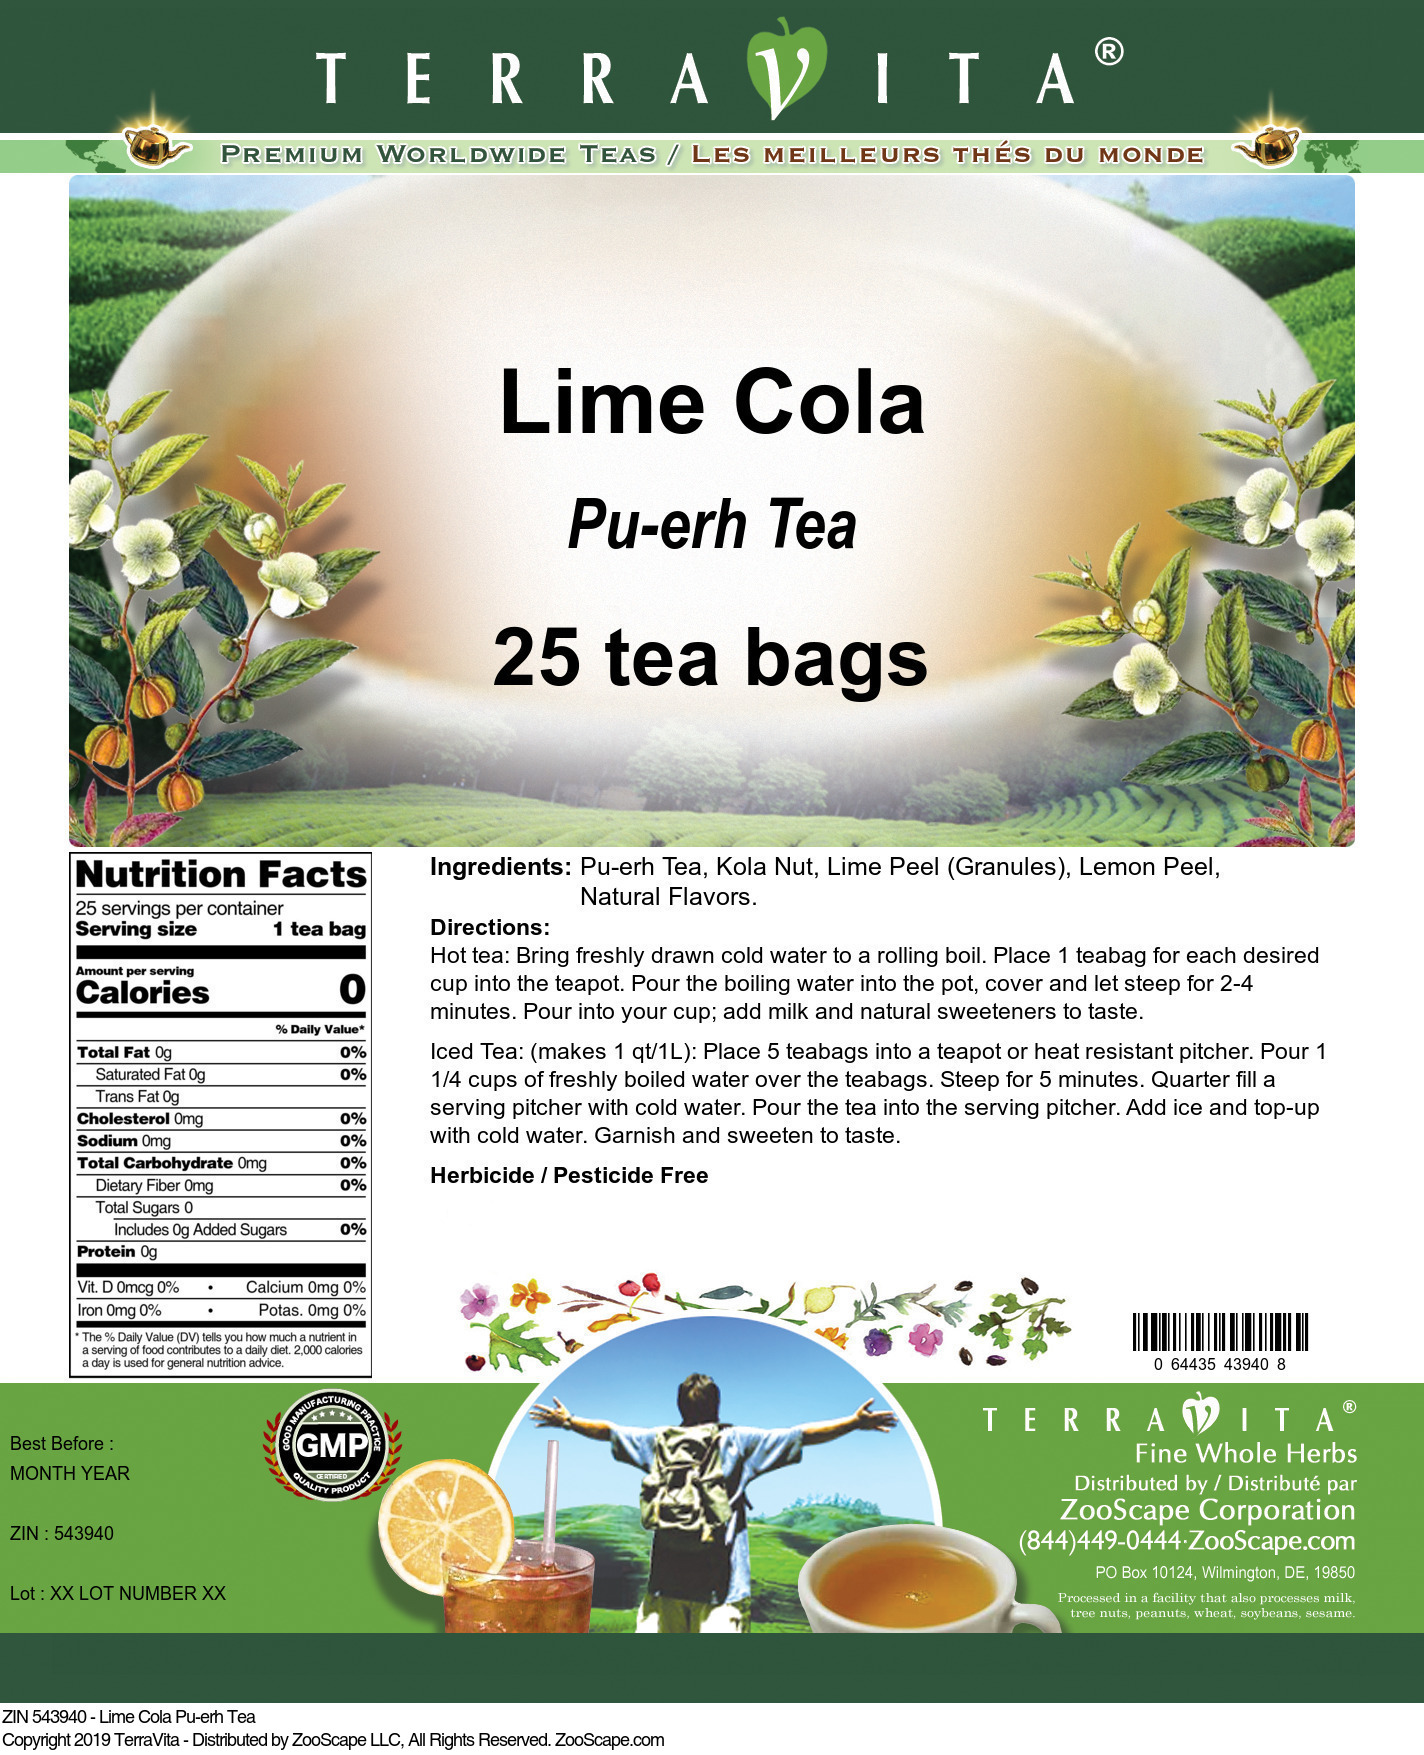 Lime Cola Pu-erh Tea - Label